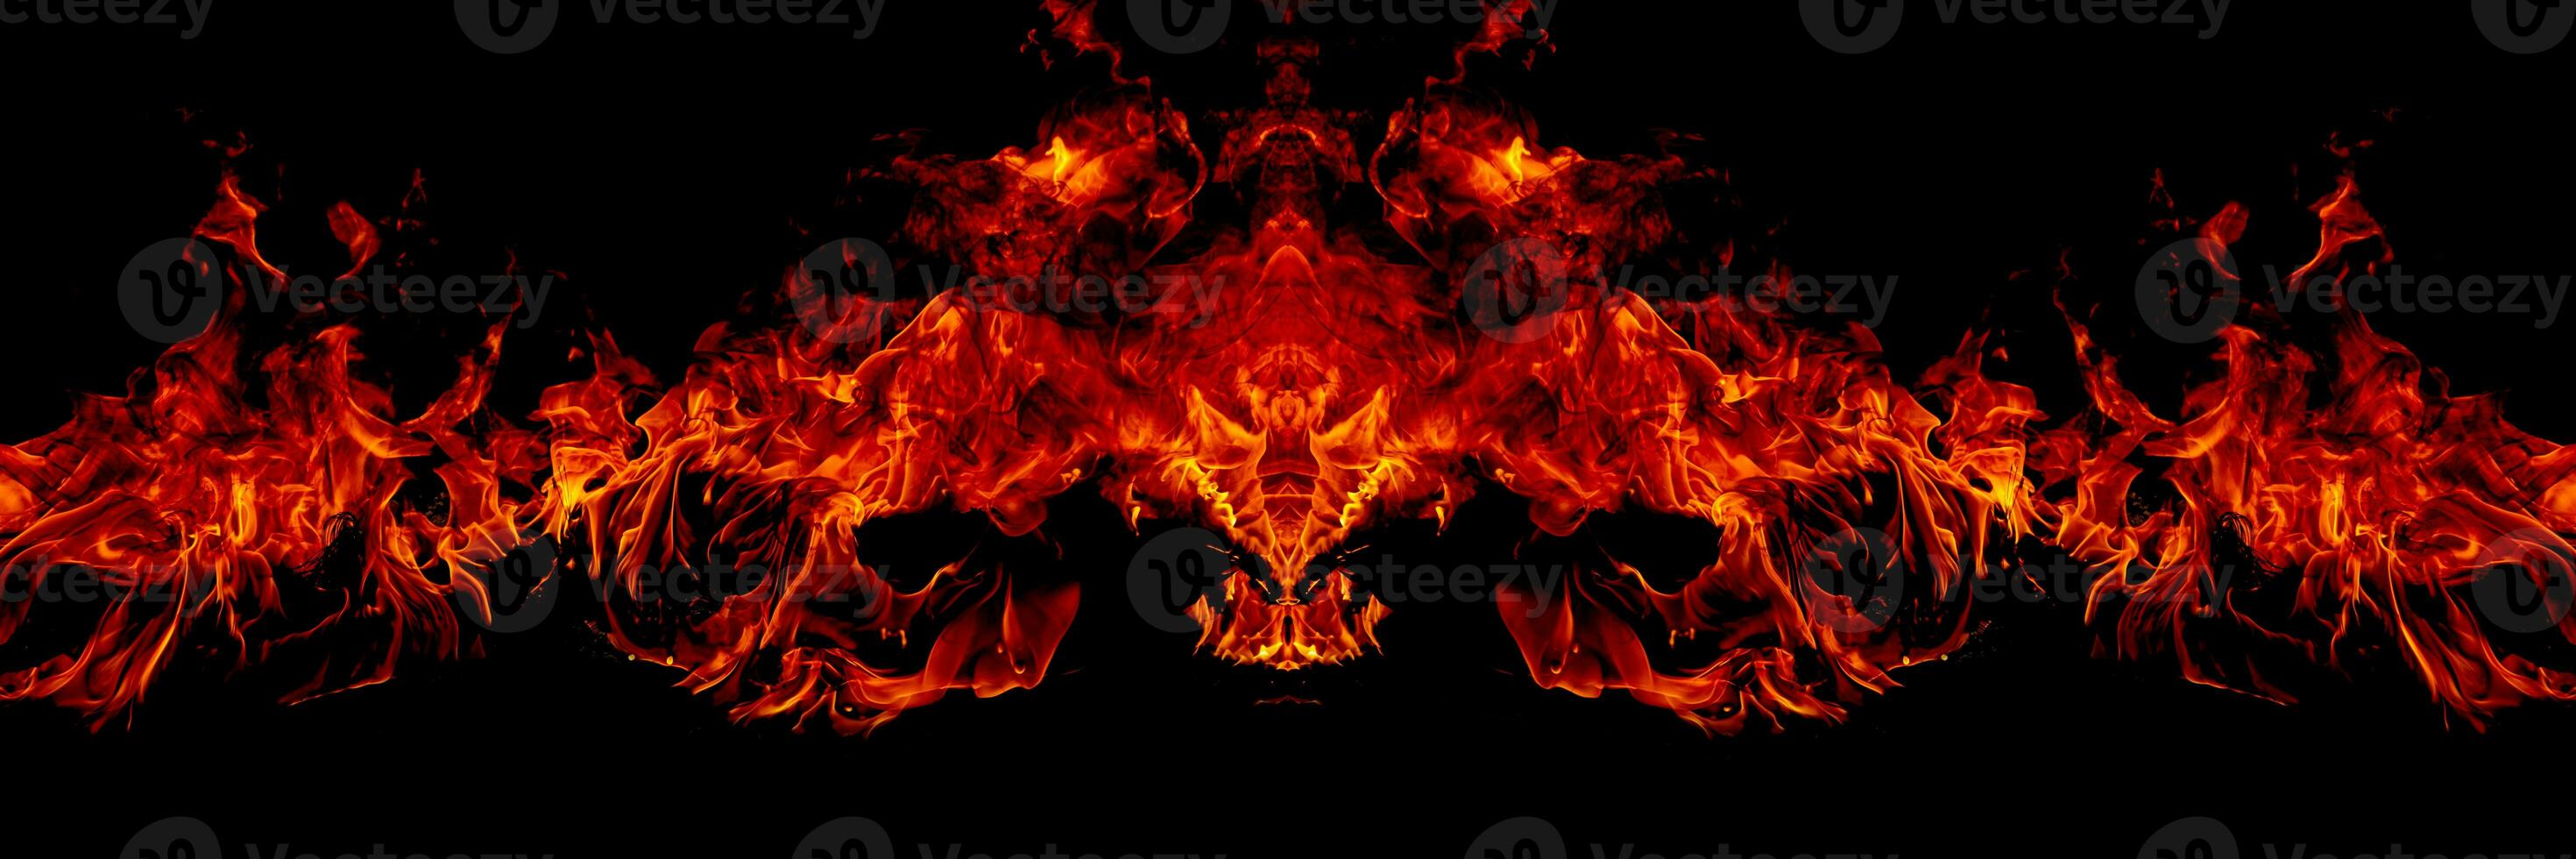 des flammes de feu sur fond noir d'art abstrait, des étincelles rouges brûlantes s'élèvent, des particules volantes rougeoyantes orange ardente photo